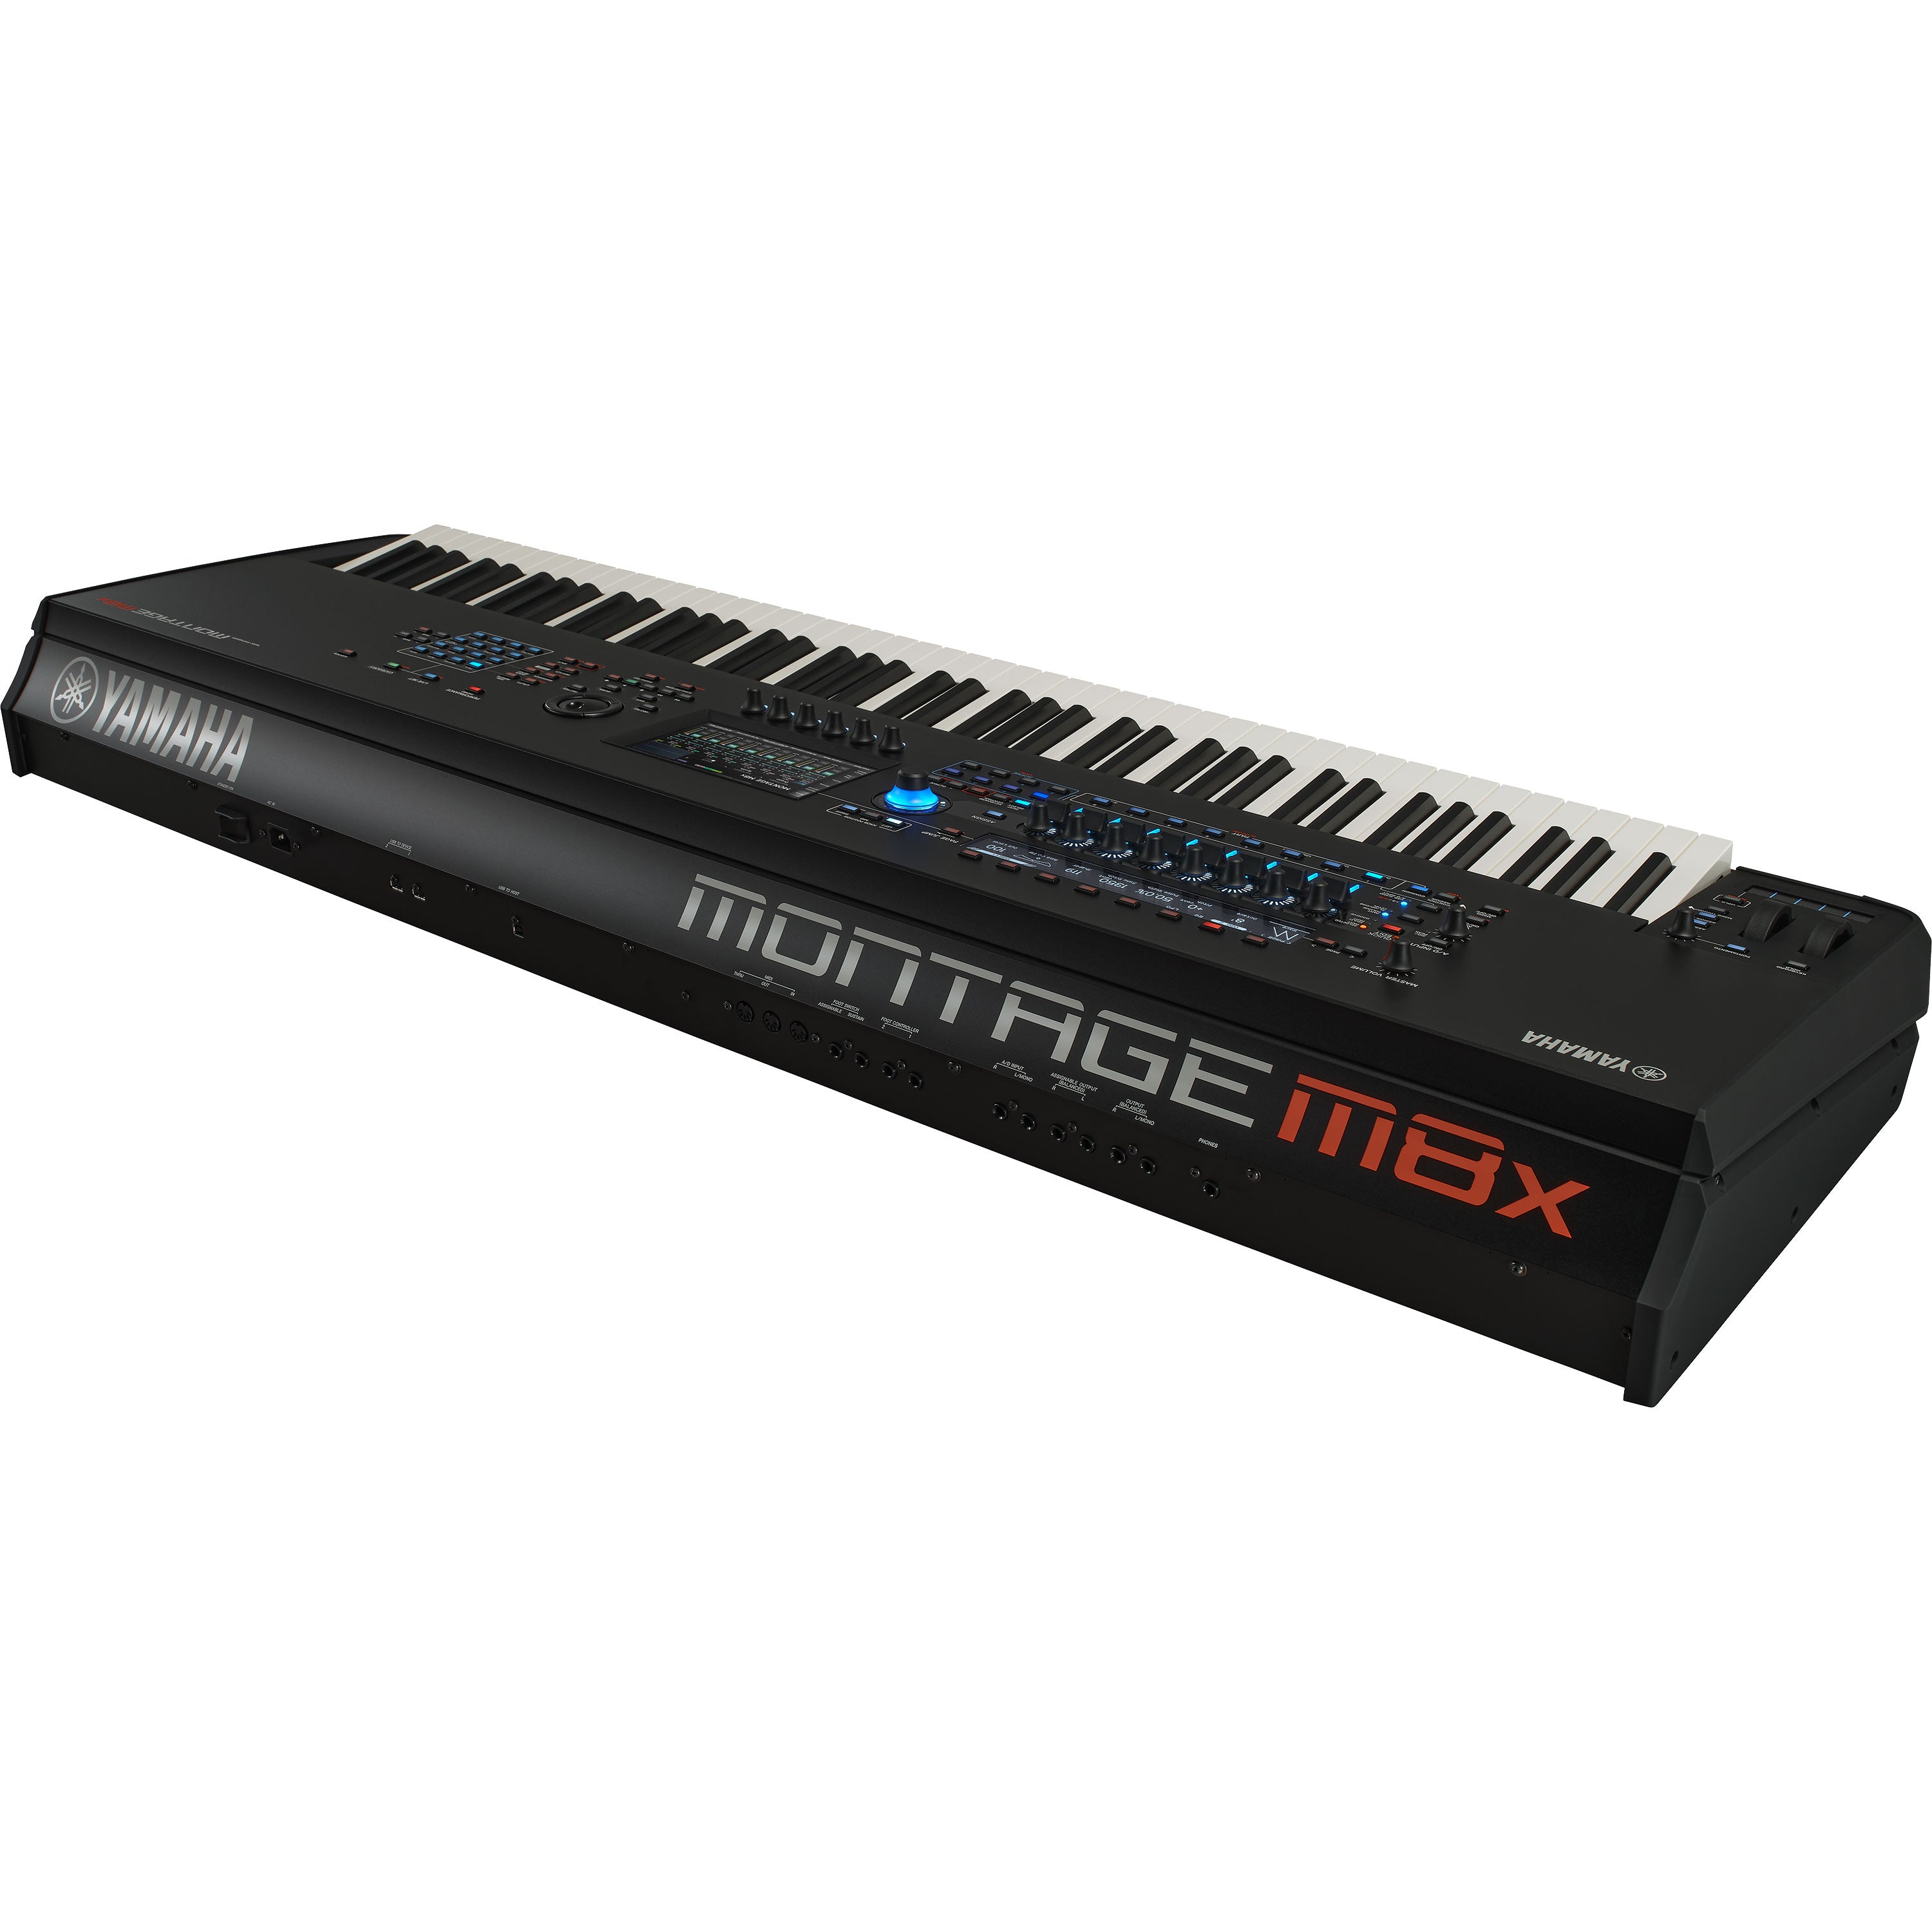 Yamaha Montage M8x Synthesizer – Kraft Music